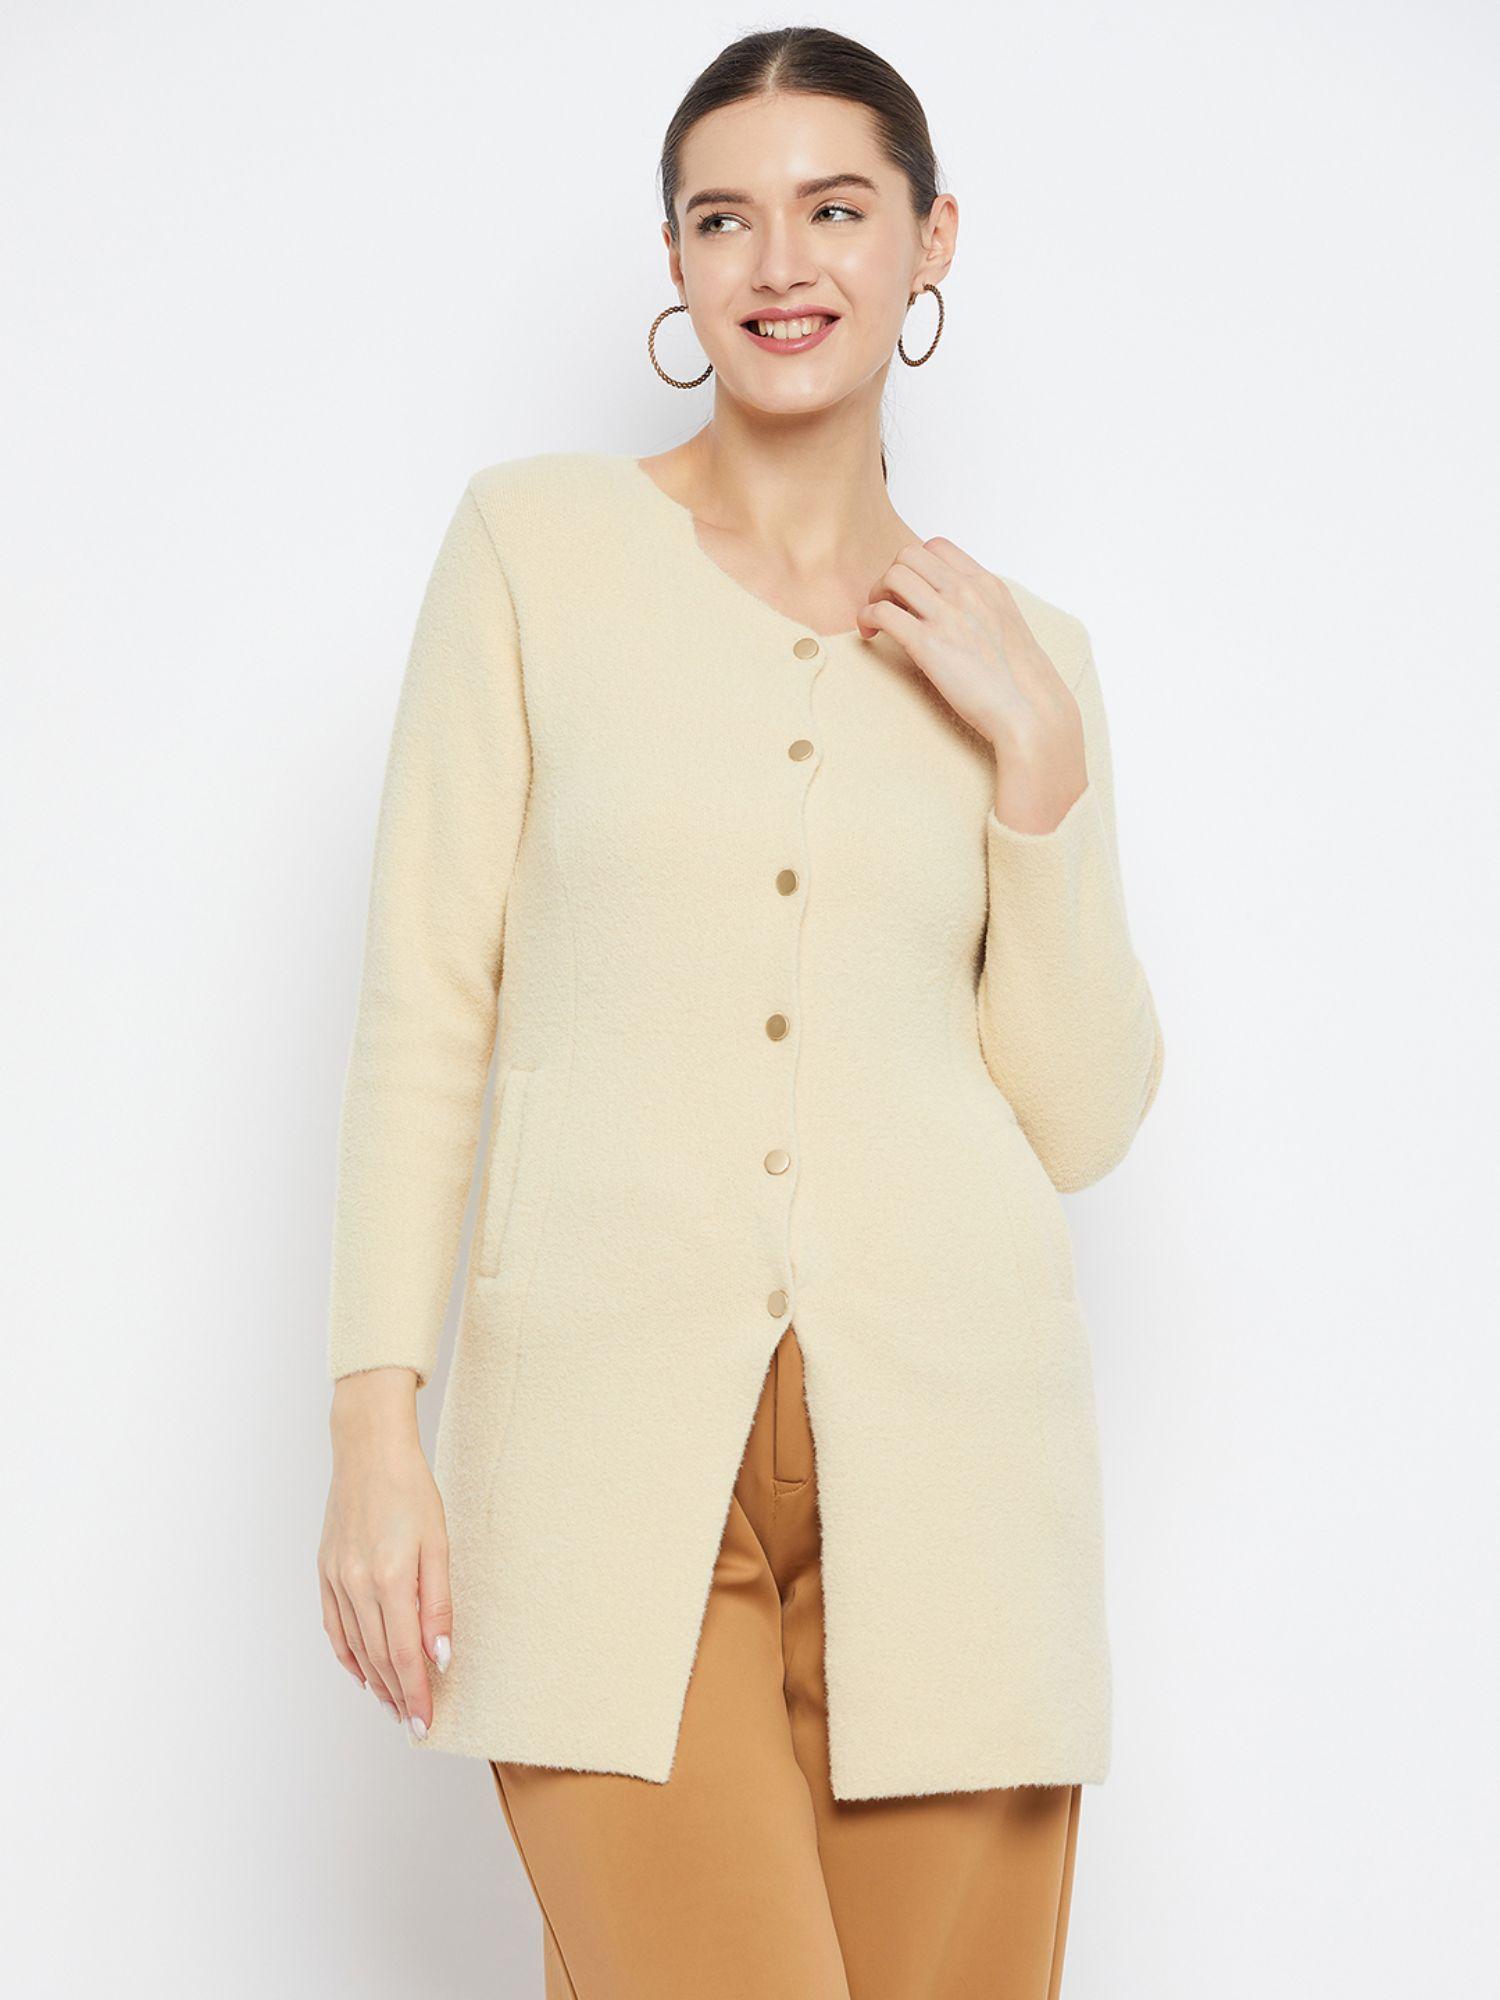 women-winterwear-solid-beige-long-line-woollen-cardigan